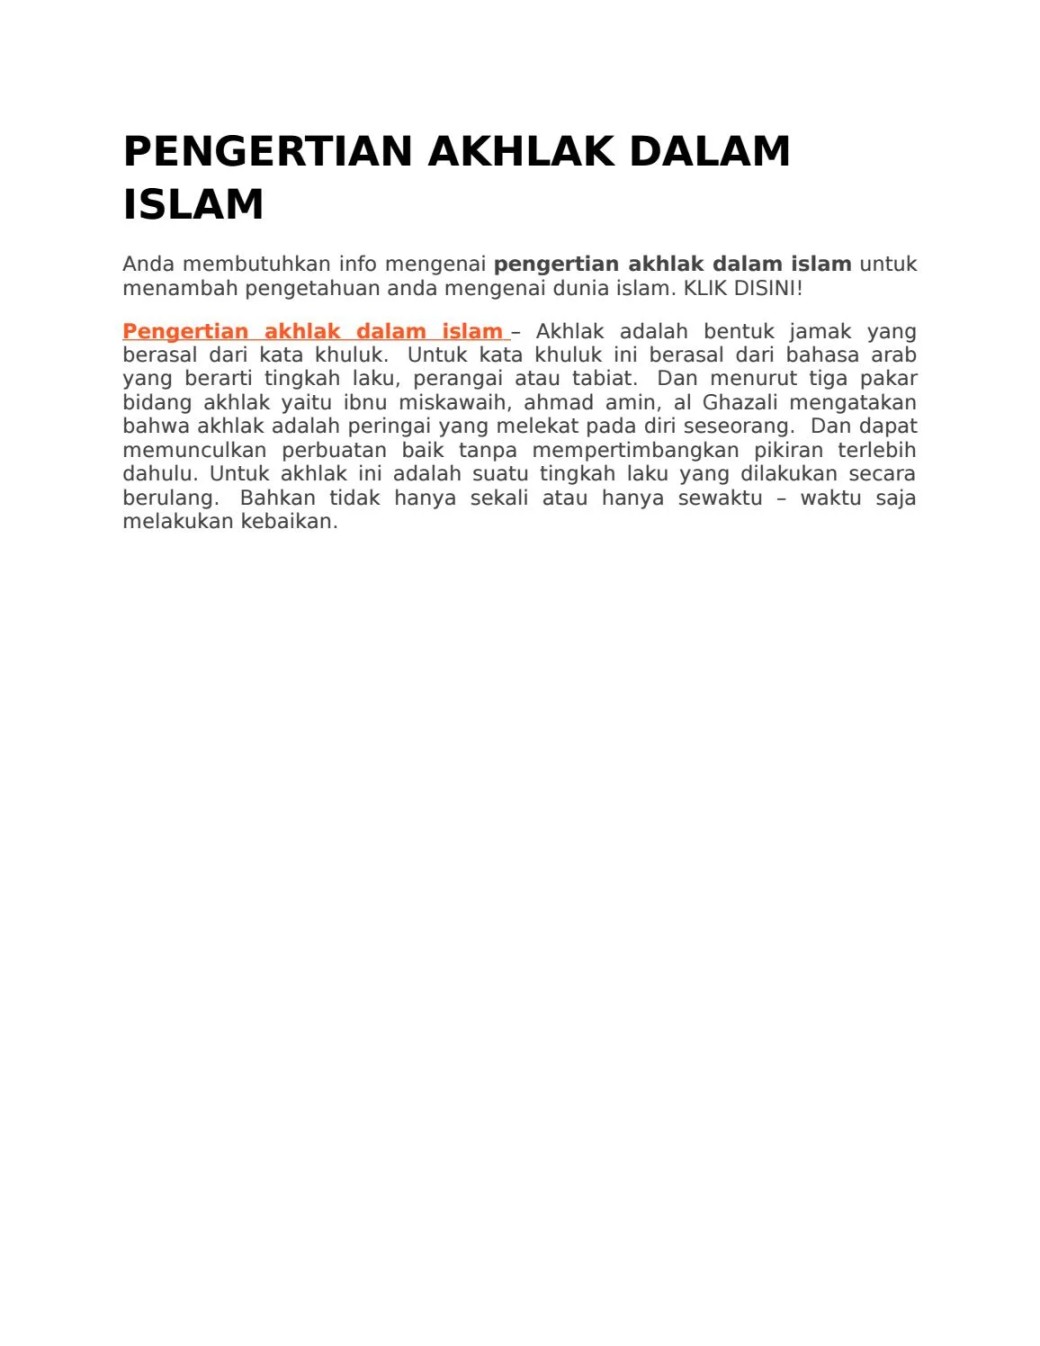 PENGERTIAN AKHLAK DALAM ISLAM by fridaddv - Issuu